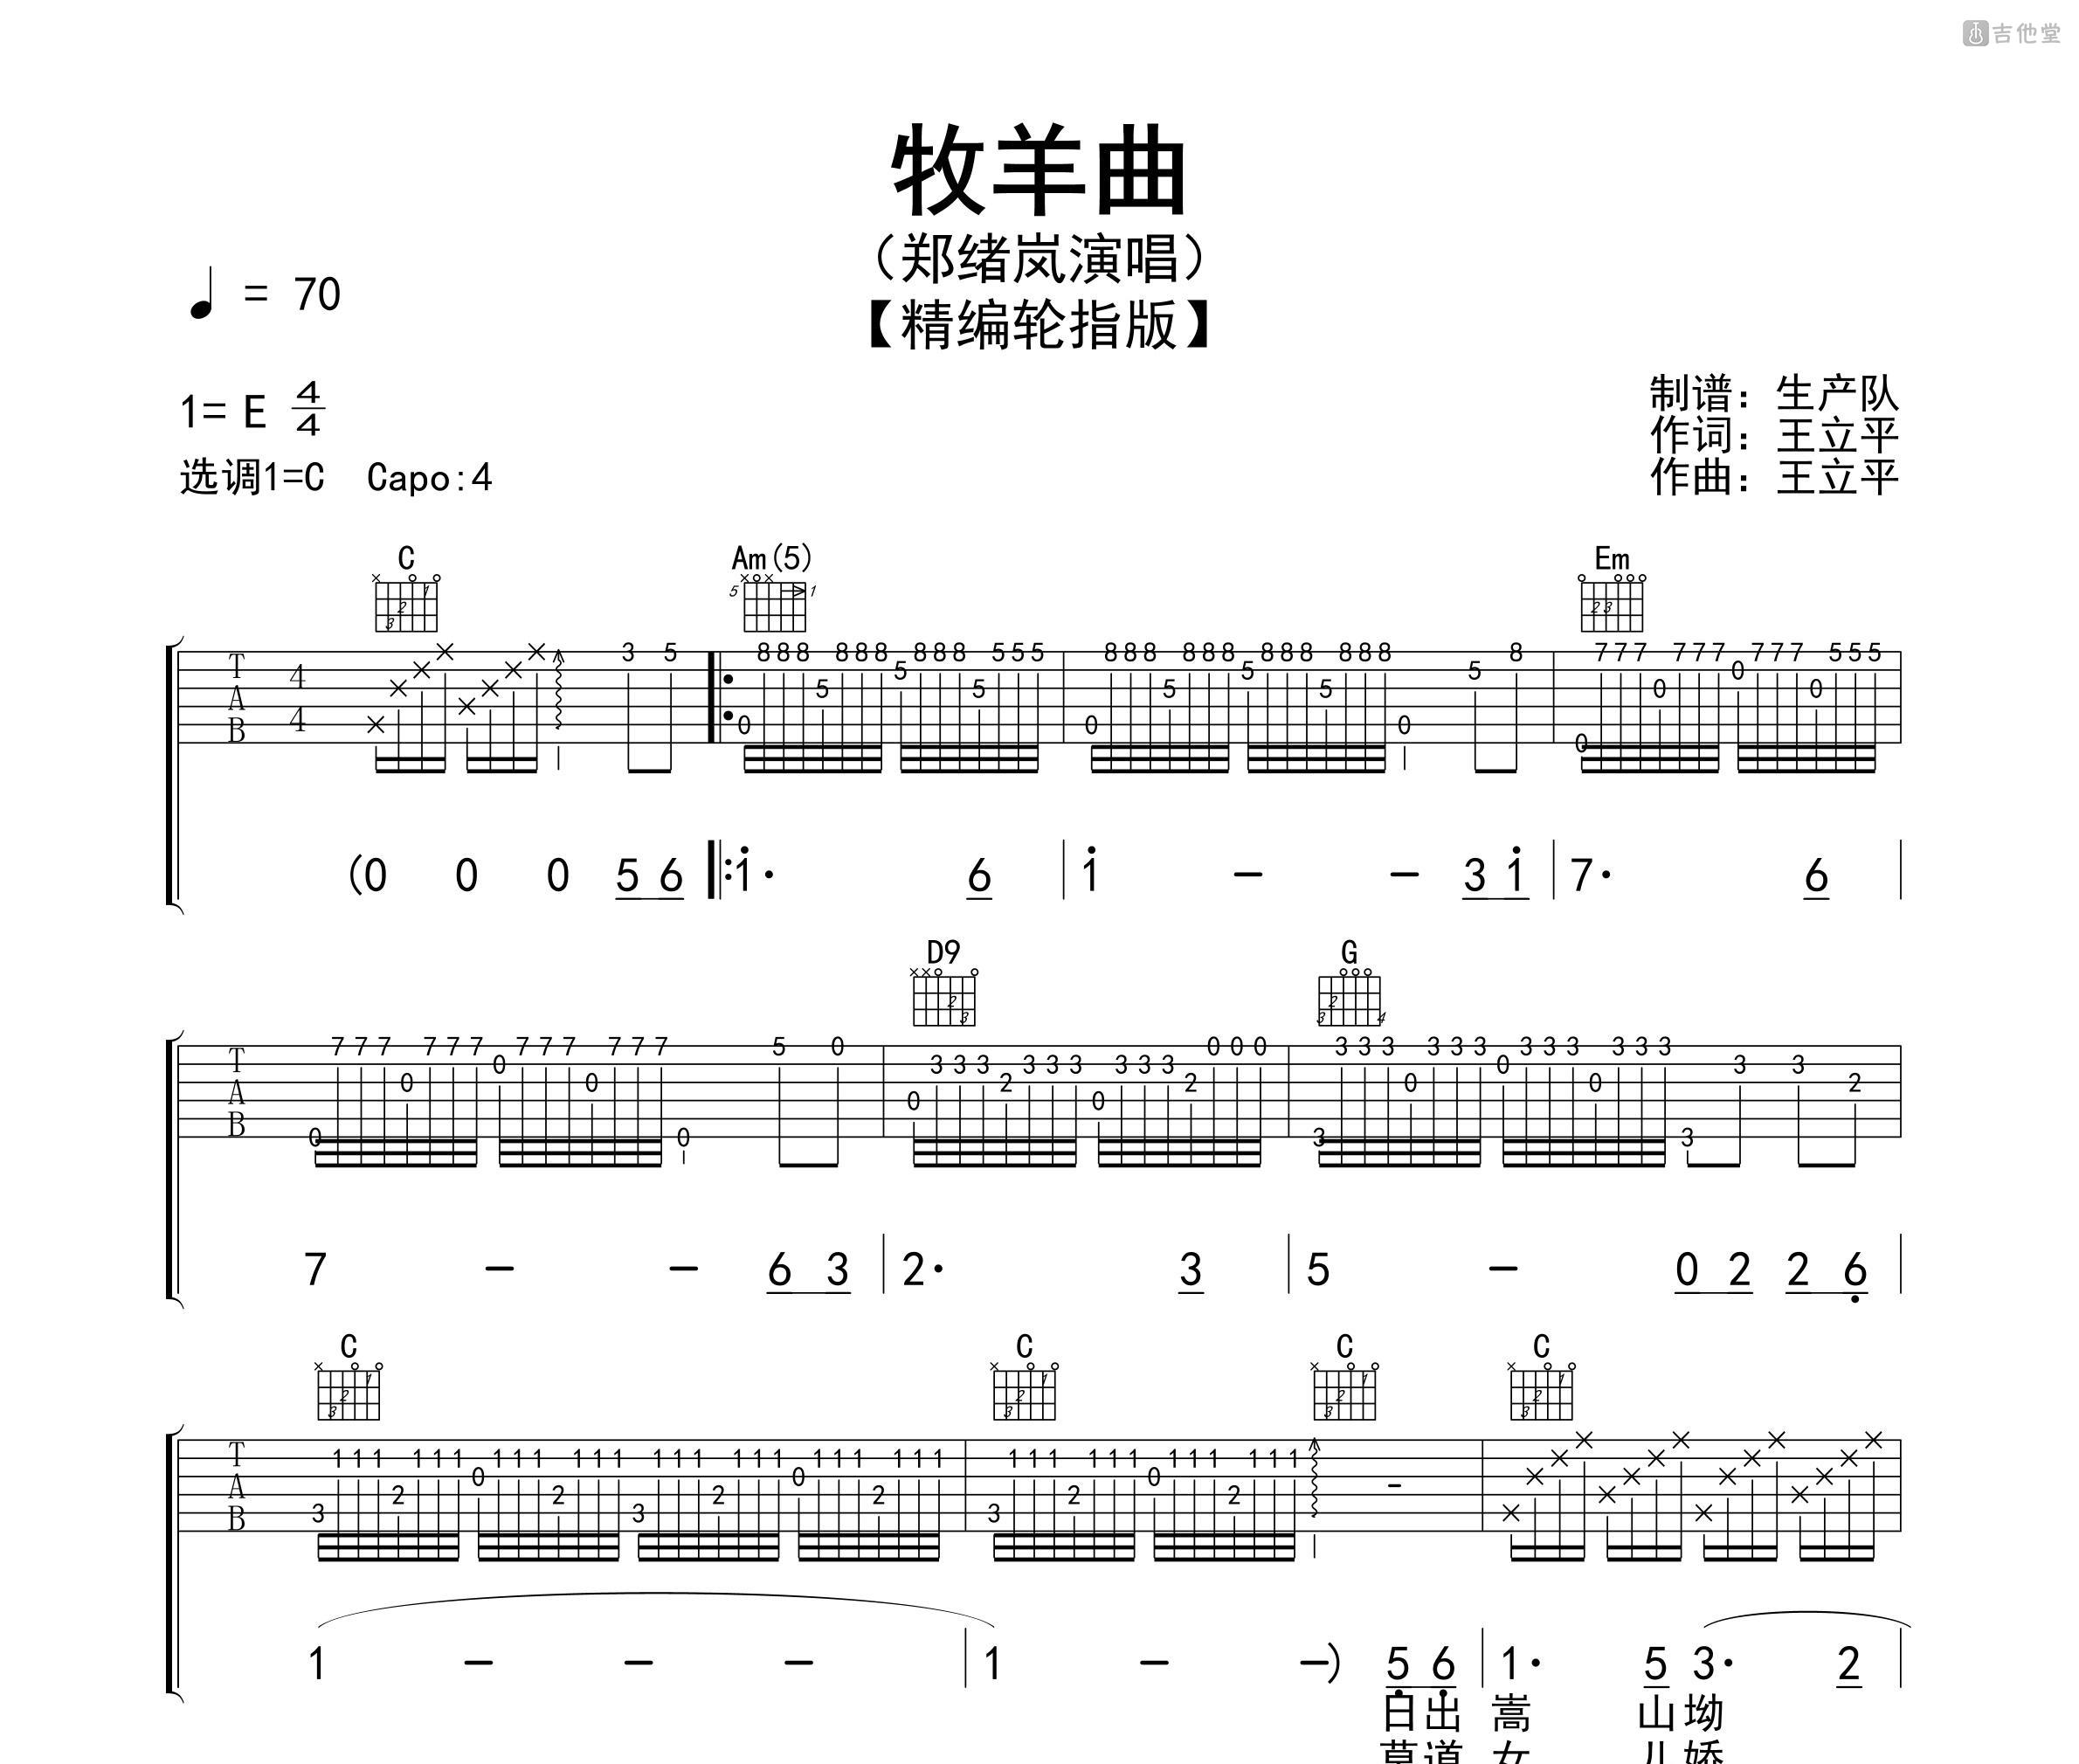 吉他中级练习曲《牧羊曲》中国乐曲-吉他曲谱 - 乐器学习网